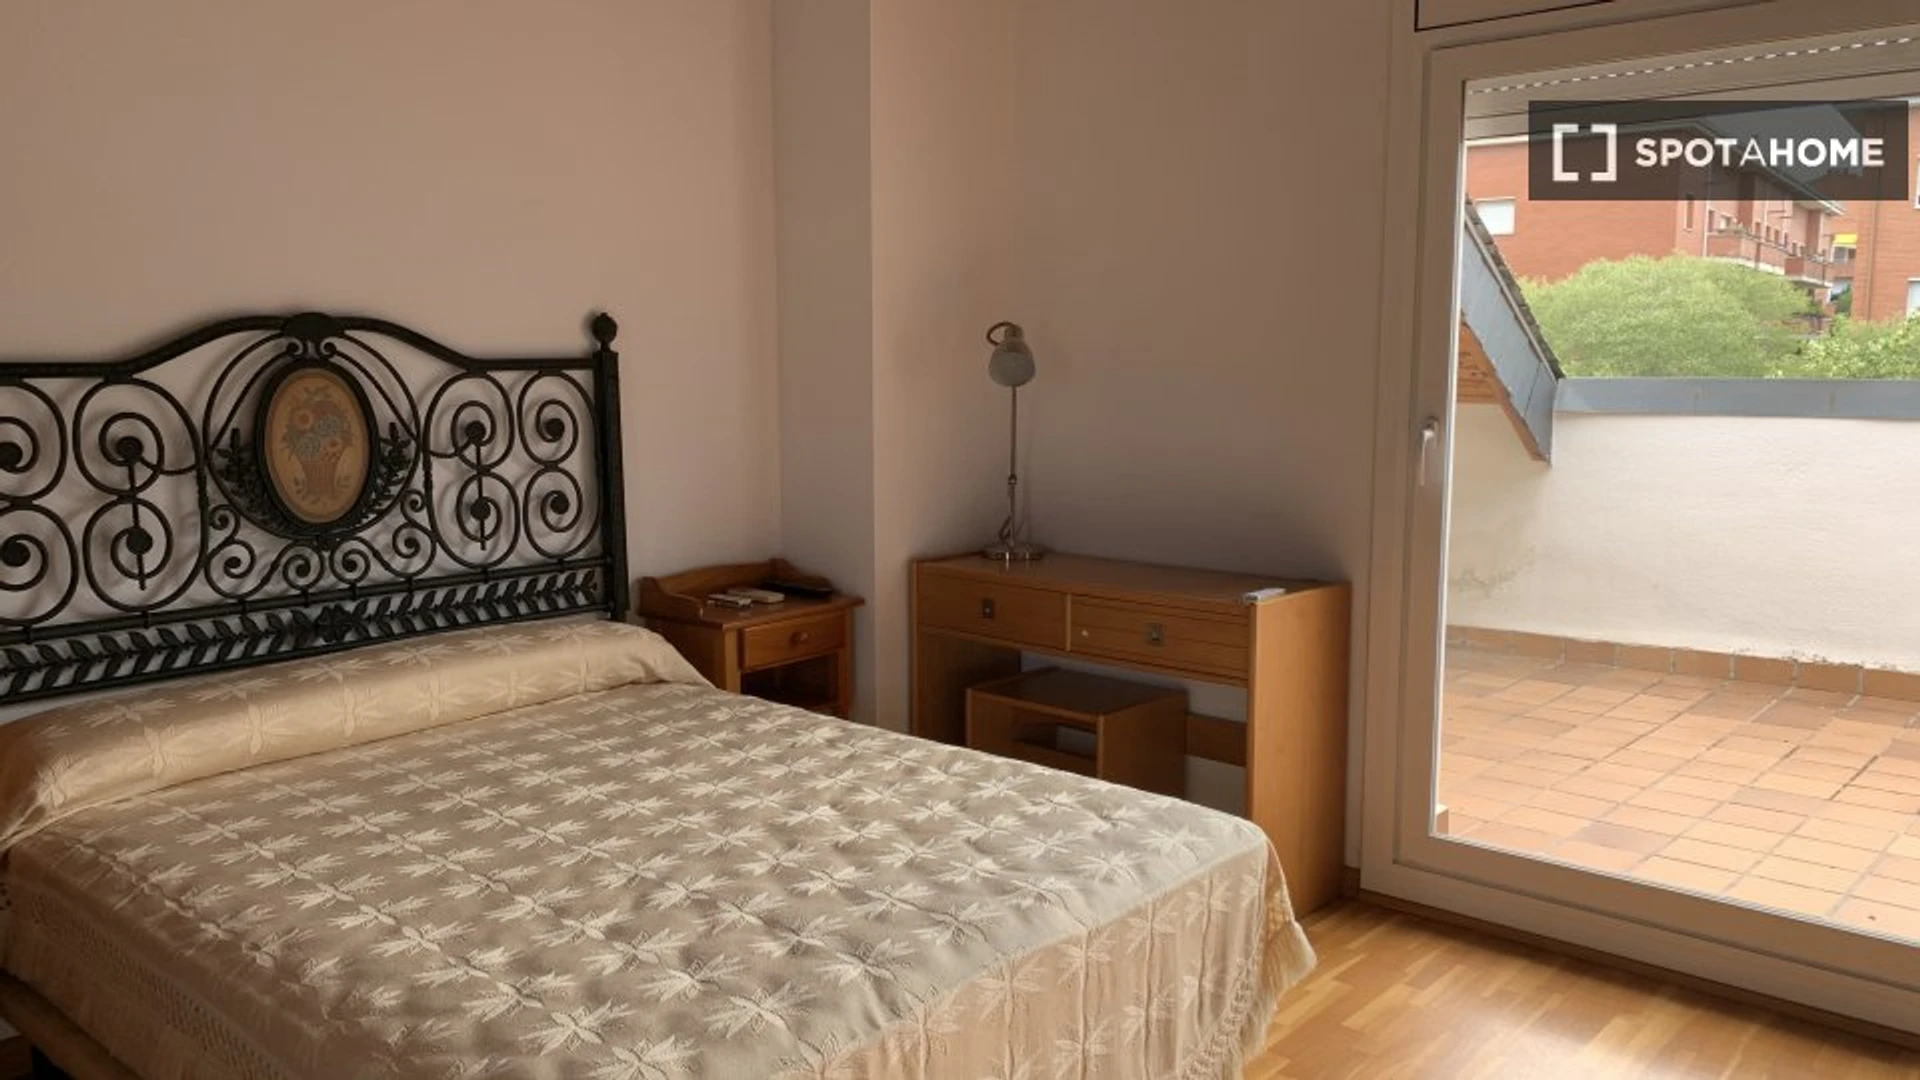 Bright private room in Sant Cugat Del Vallès